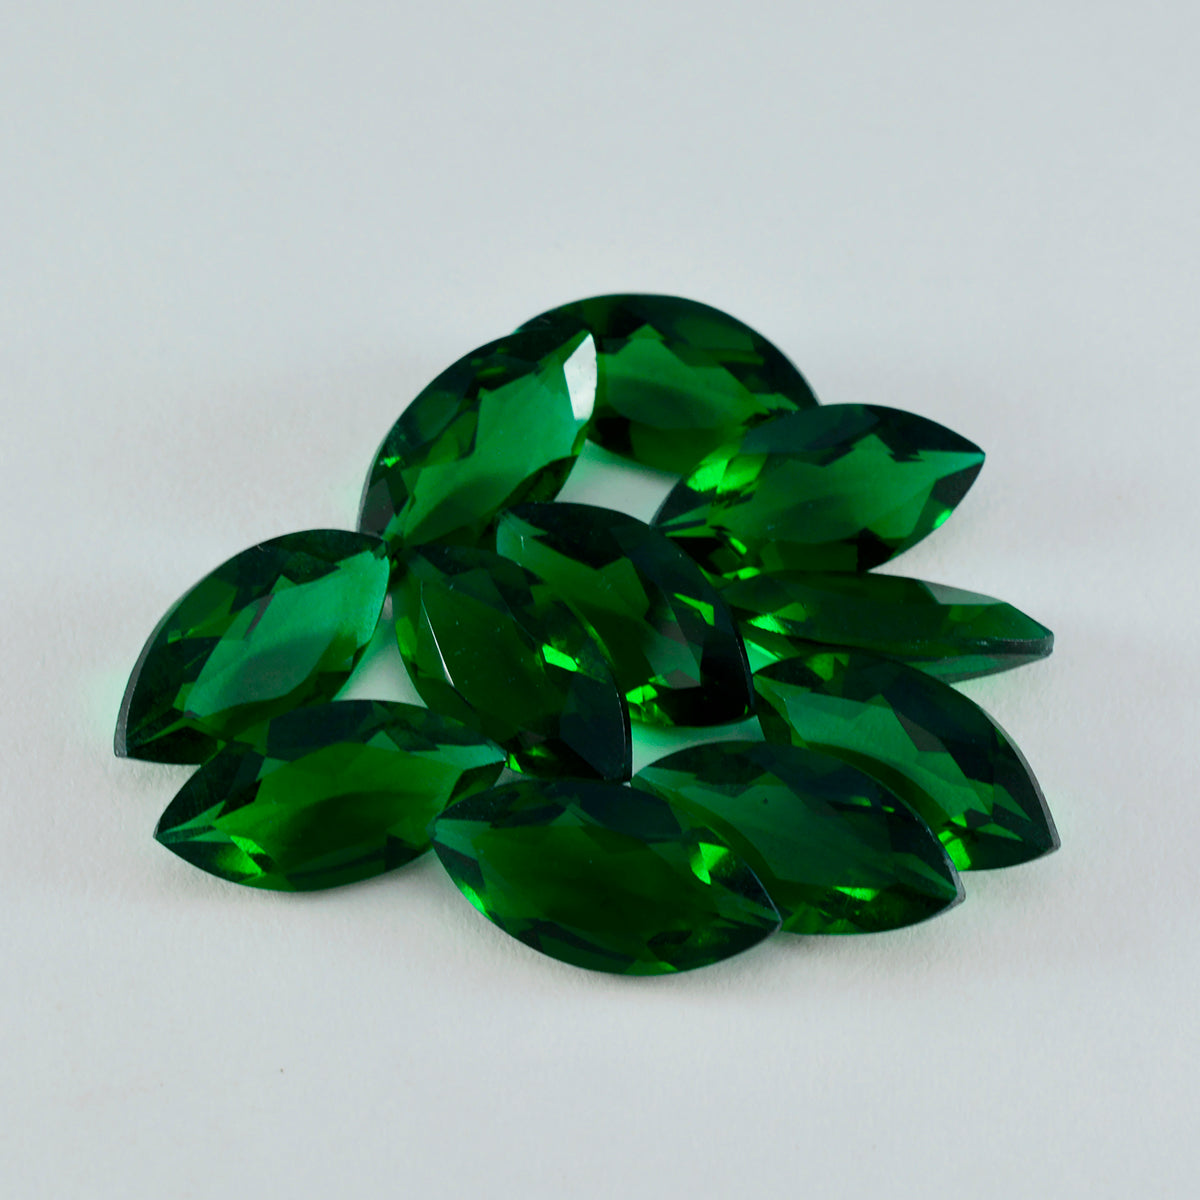 riyogems 1шт зеленый изумруд cz ограненный 7x14 мм форма маркиза а+ качество драгоценный камень